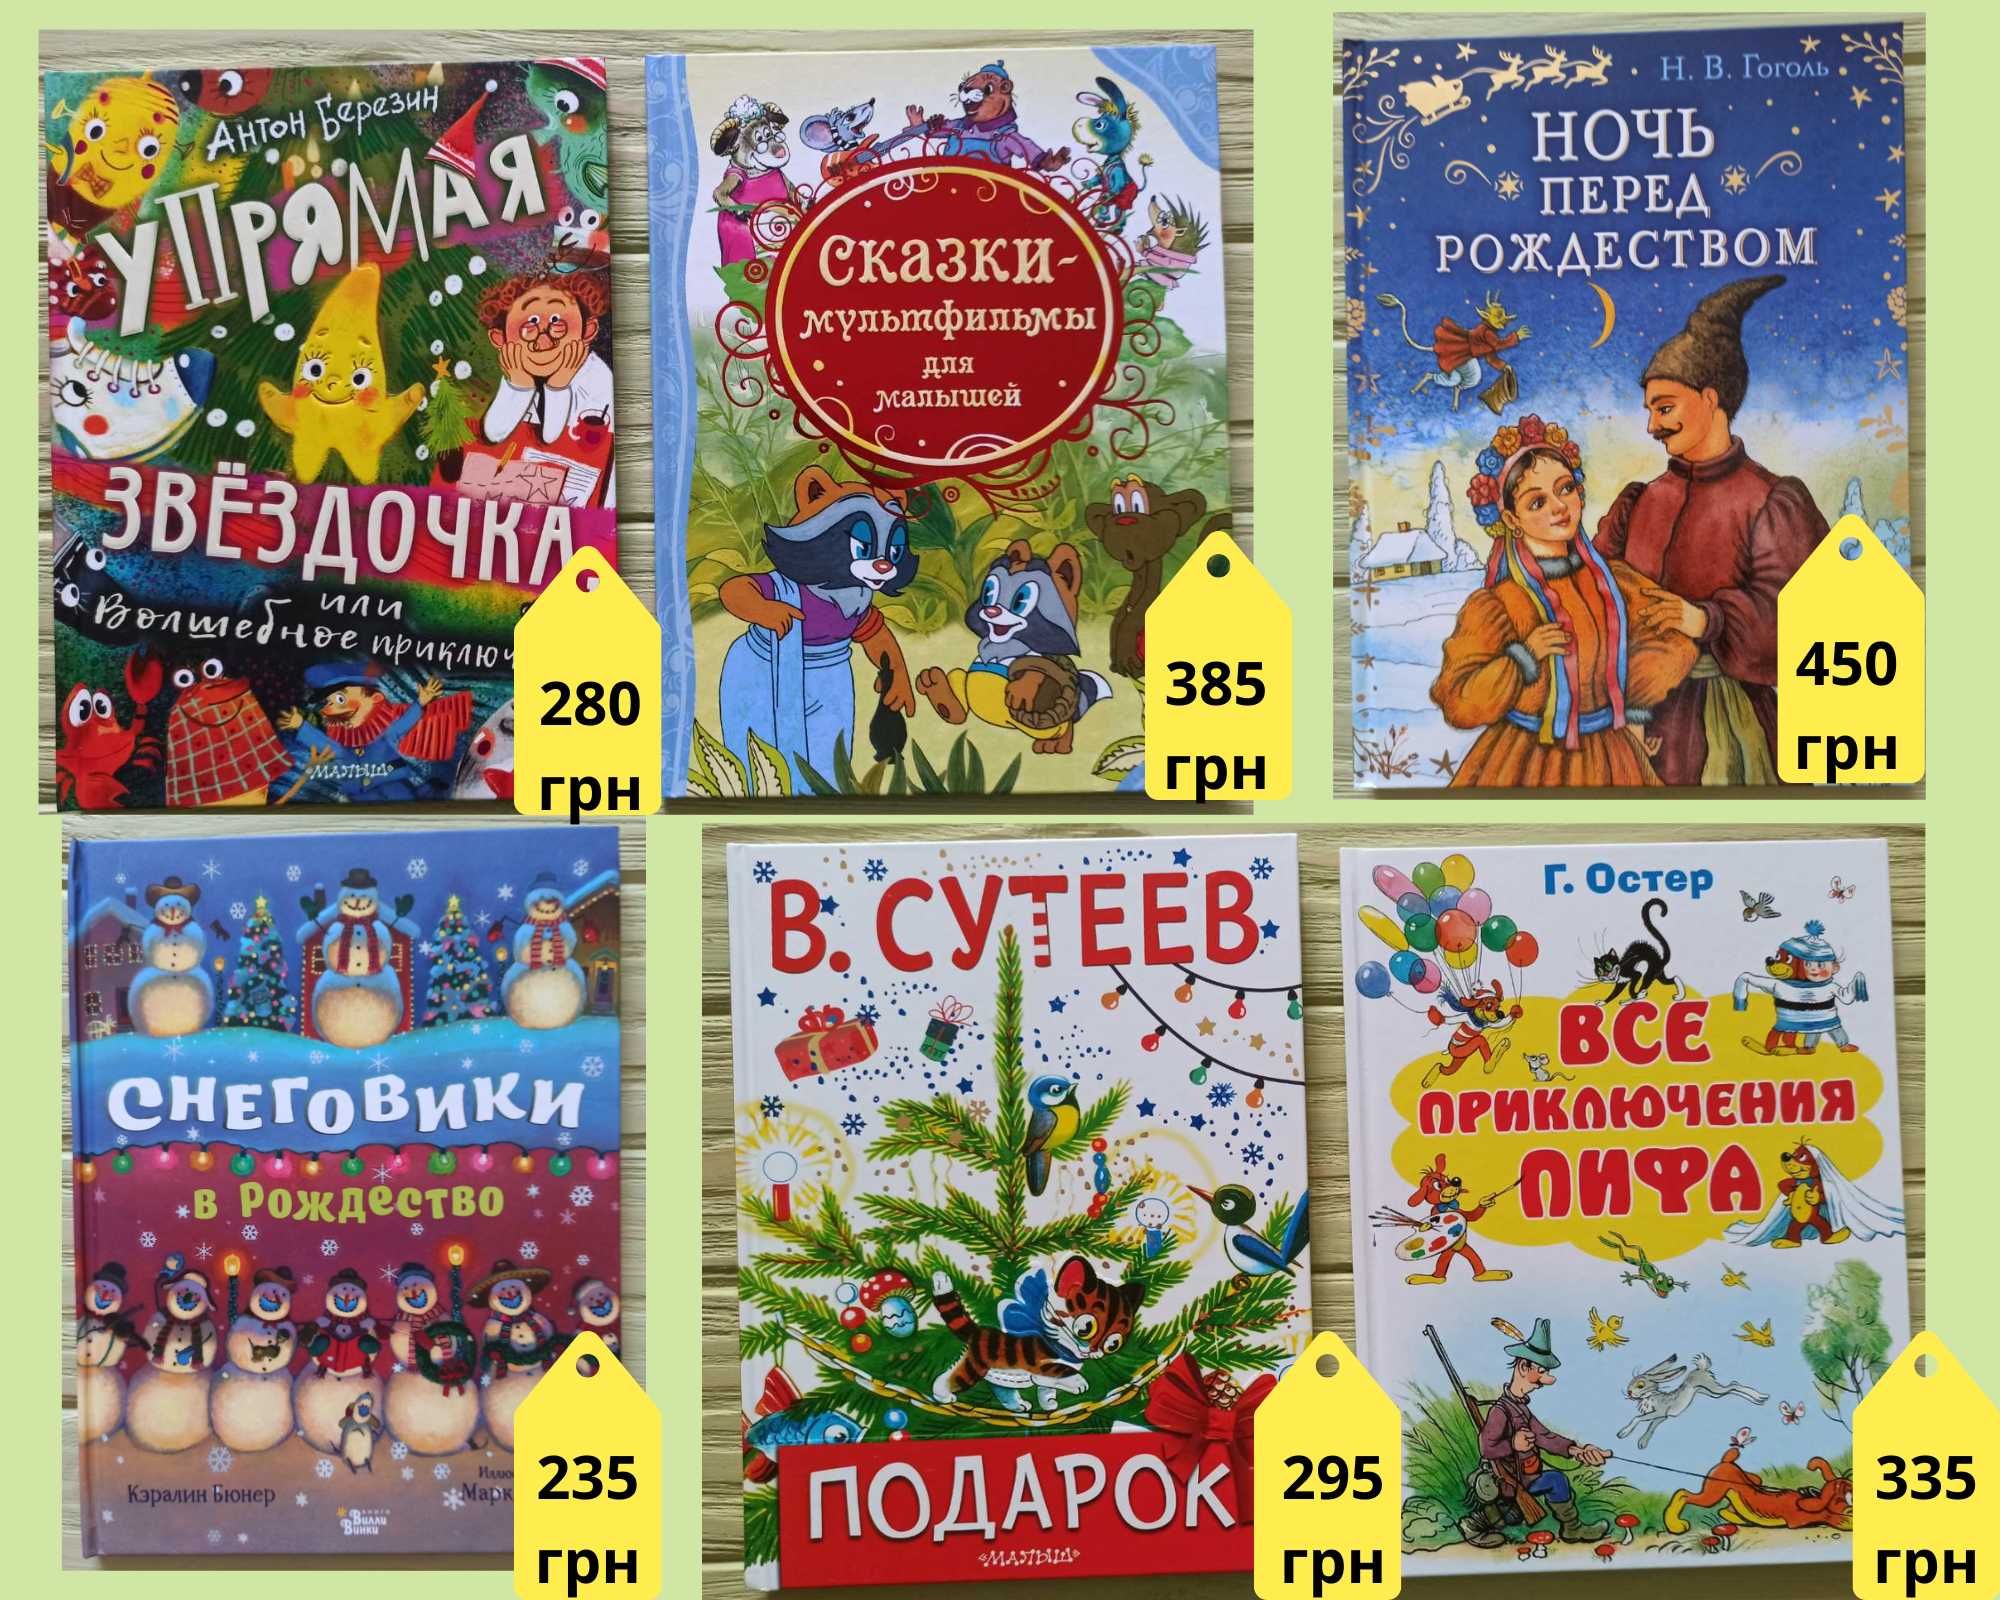 Дитячі книги: казки, вірші, новорічні книги